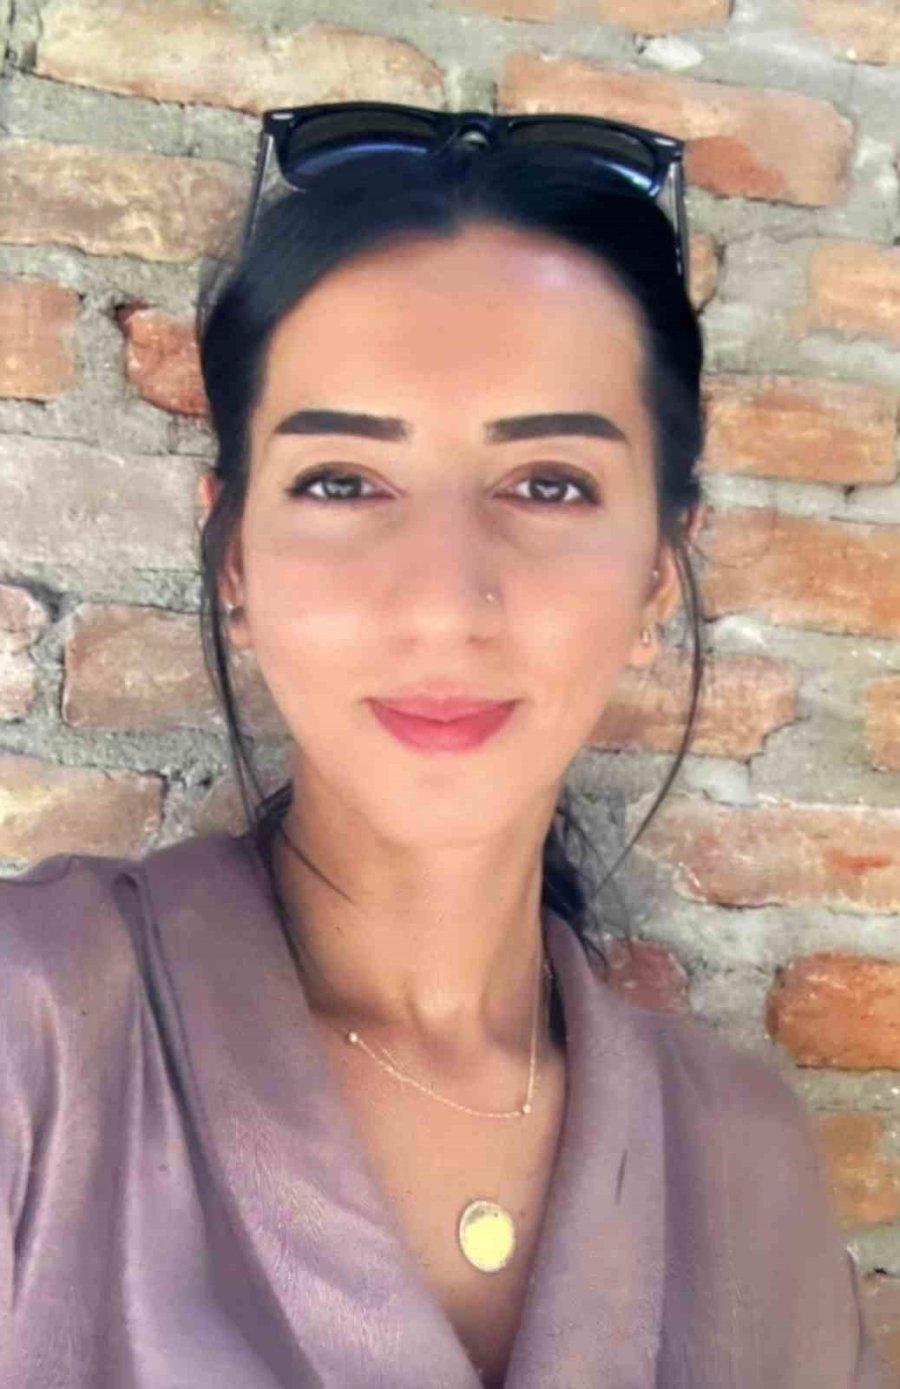 Sevgilisinin Camdan Düşerek Hayatını Kaybetmesi Sonucu Tutuklanan Şüphelinin İfadesine Ulaşıldı